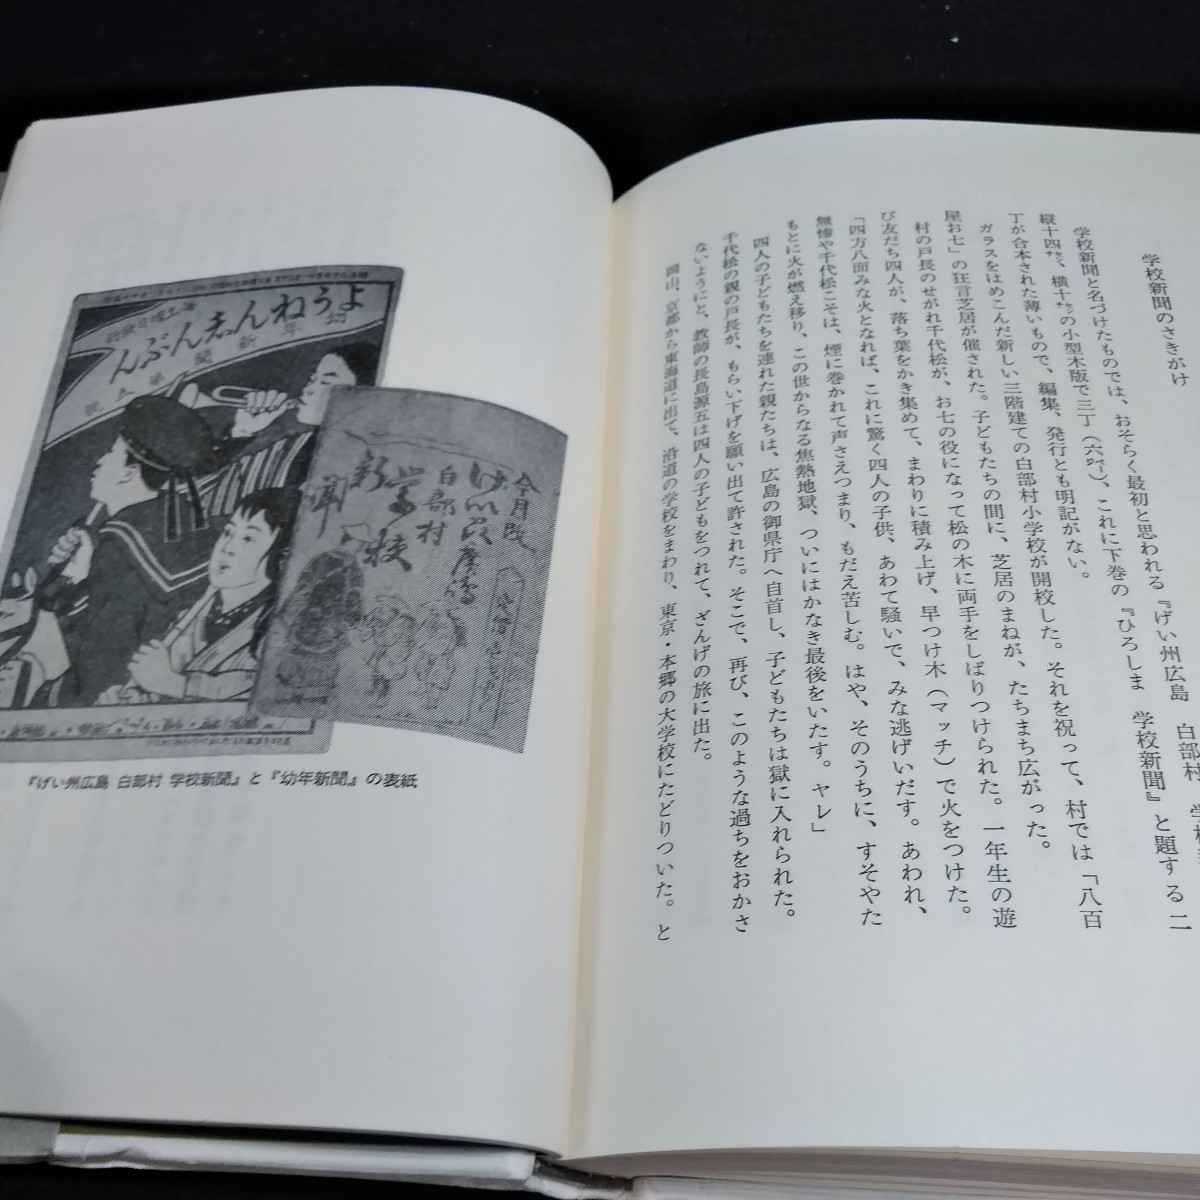 e-022 старинная книга прогулка документ Akira ... следы ....... правильный завтра утром день Eve человек g фирма *10